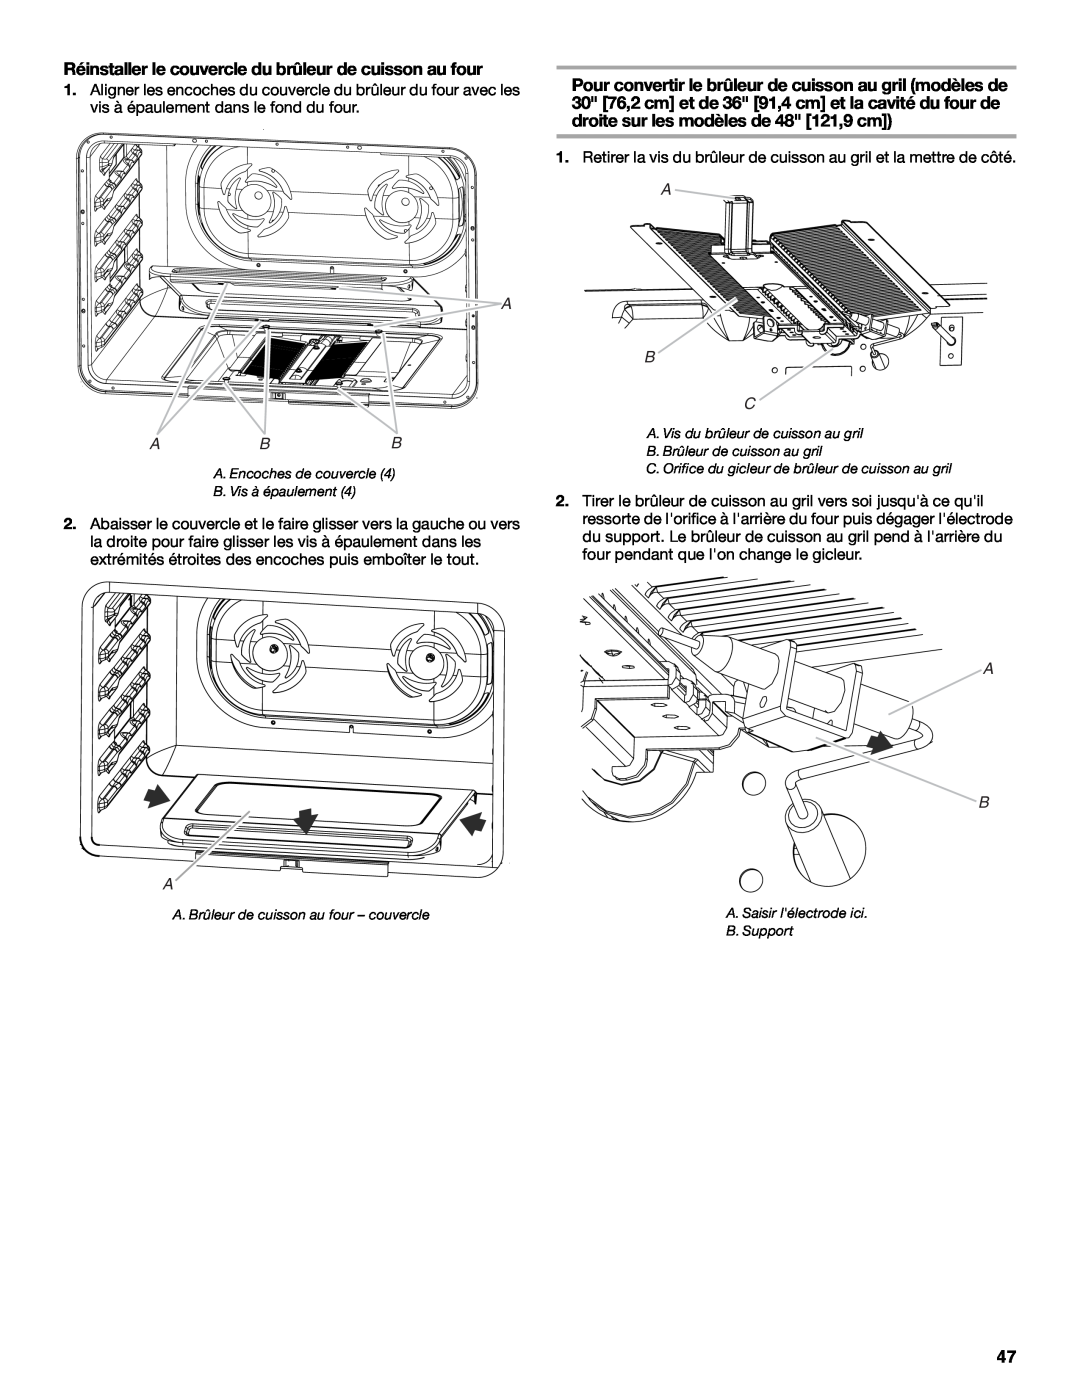 Jenn-Air W10394575A installation instructions Réinstaller le couvercle du brûleur de cuisson au four, A Abb, A B C 